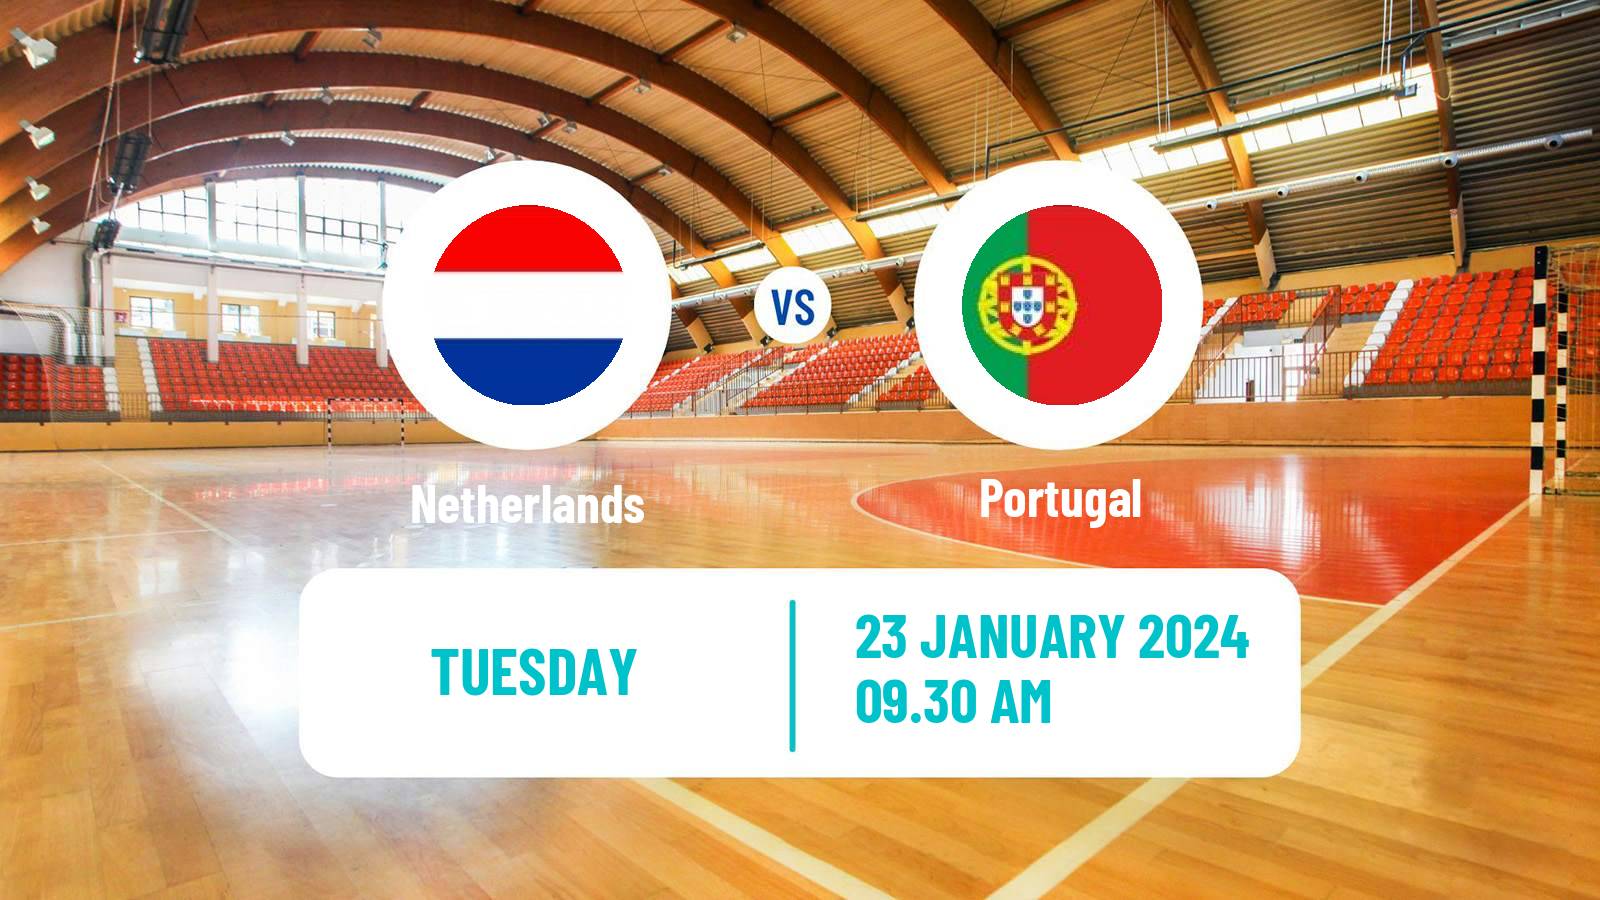 Handball Handball European Championship Netherlands - Portugal